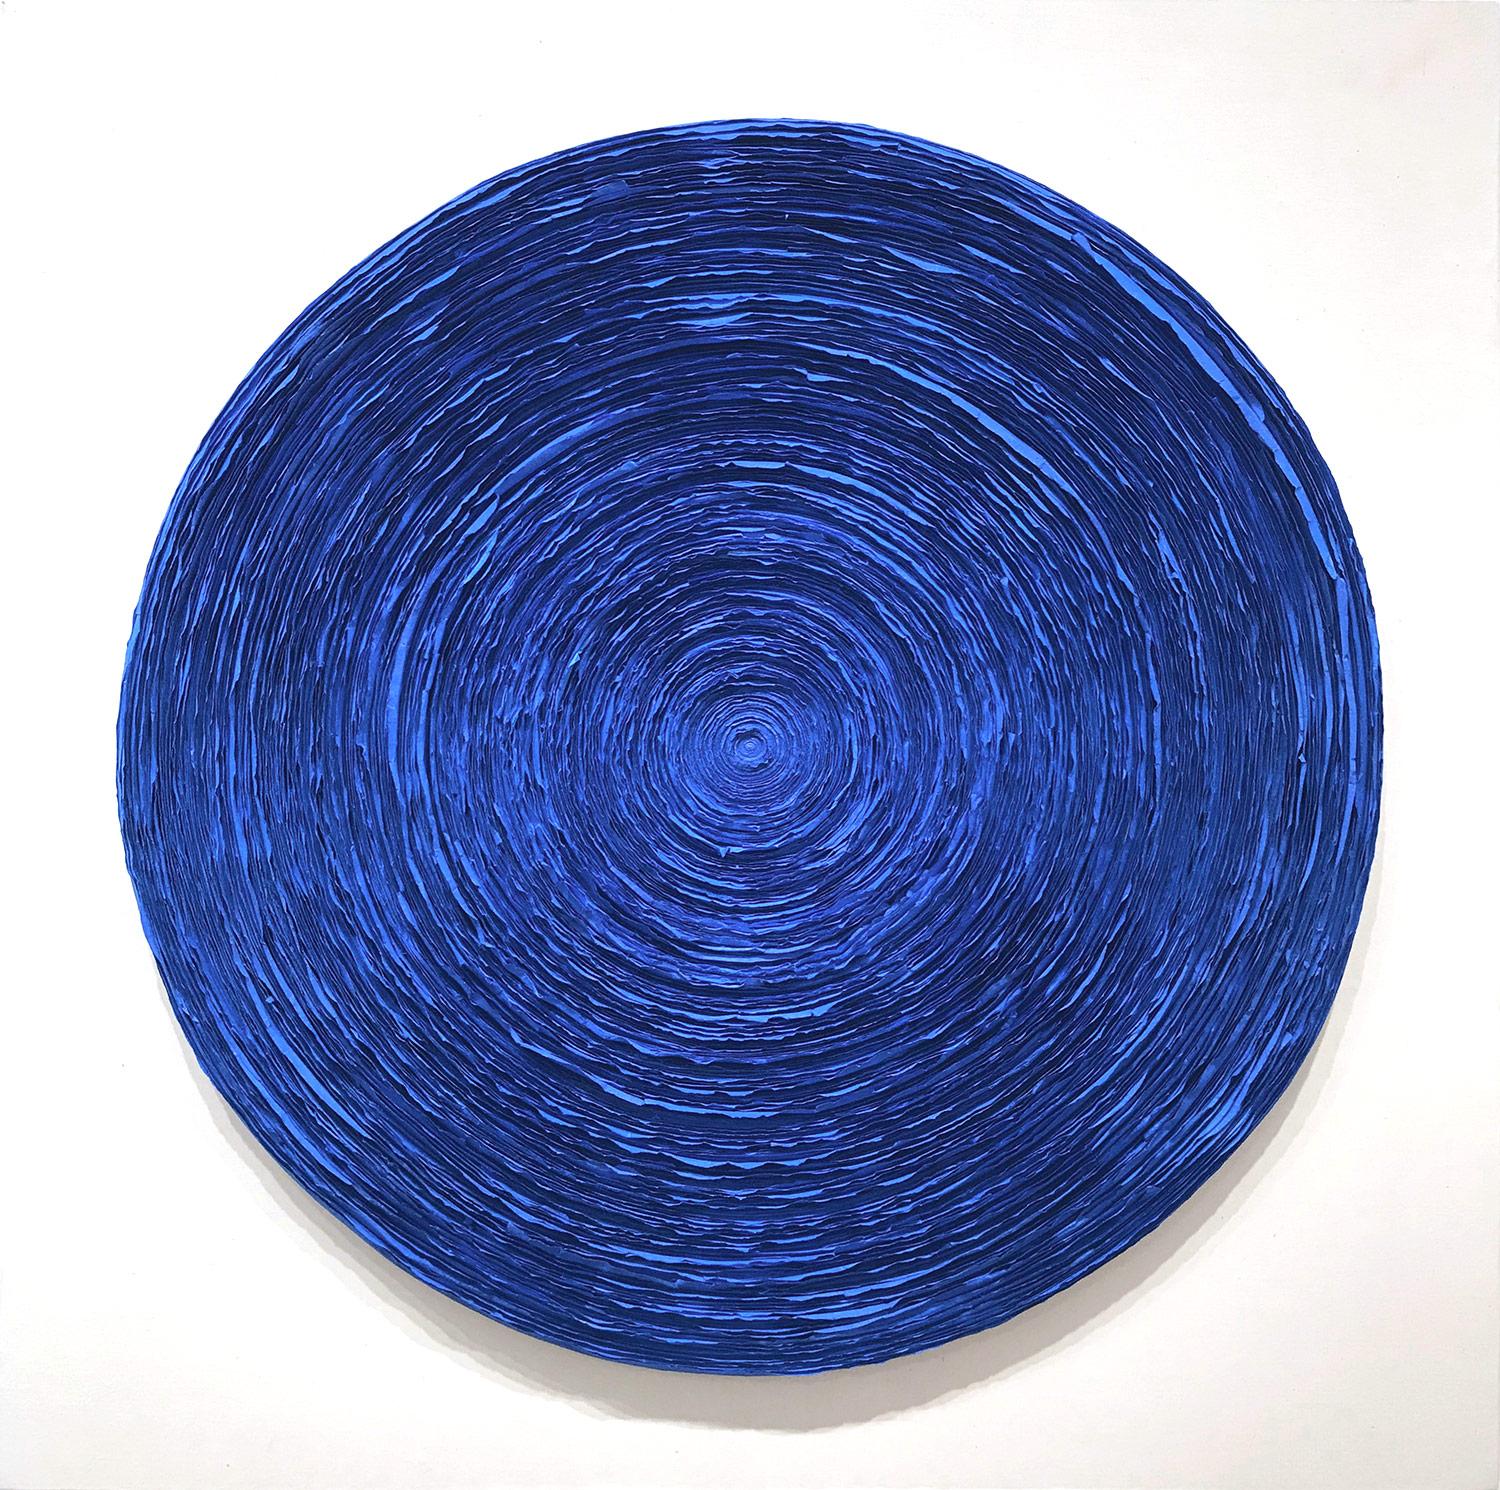 "Wave (Electric Blue)" Peinture contemporaine sur papier de riz en techniques mixtes sur panneau